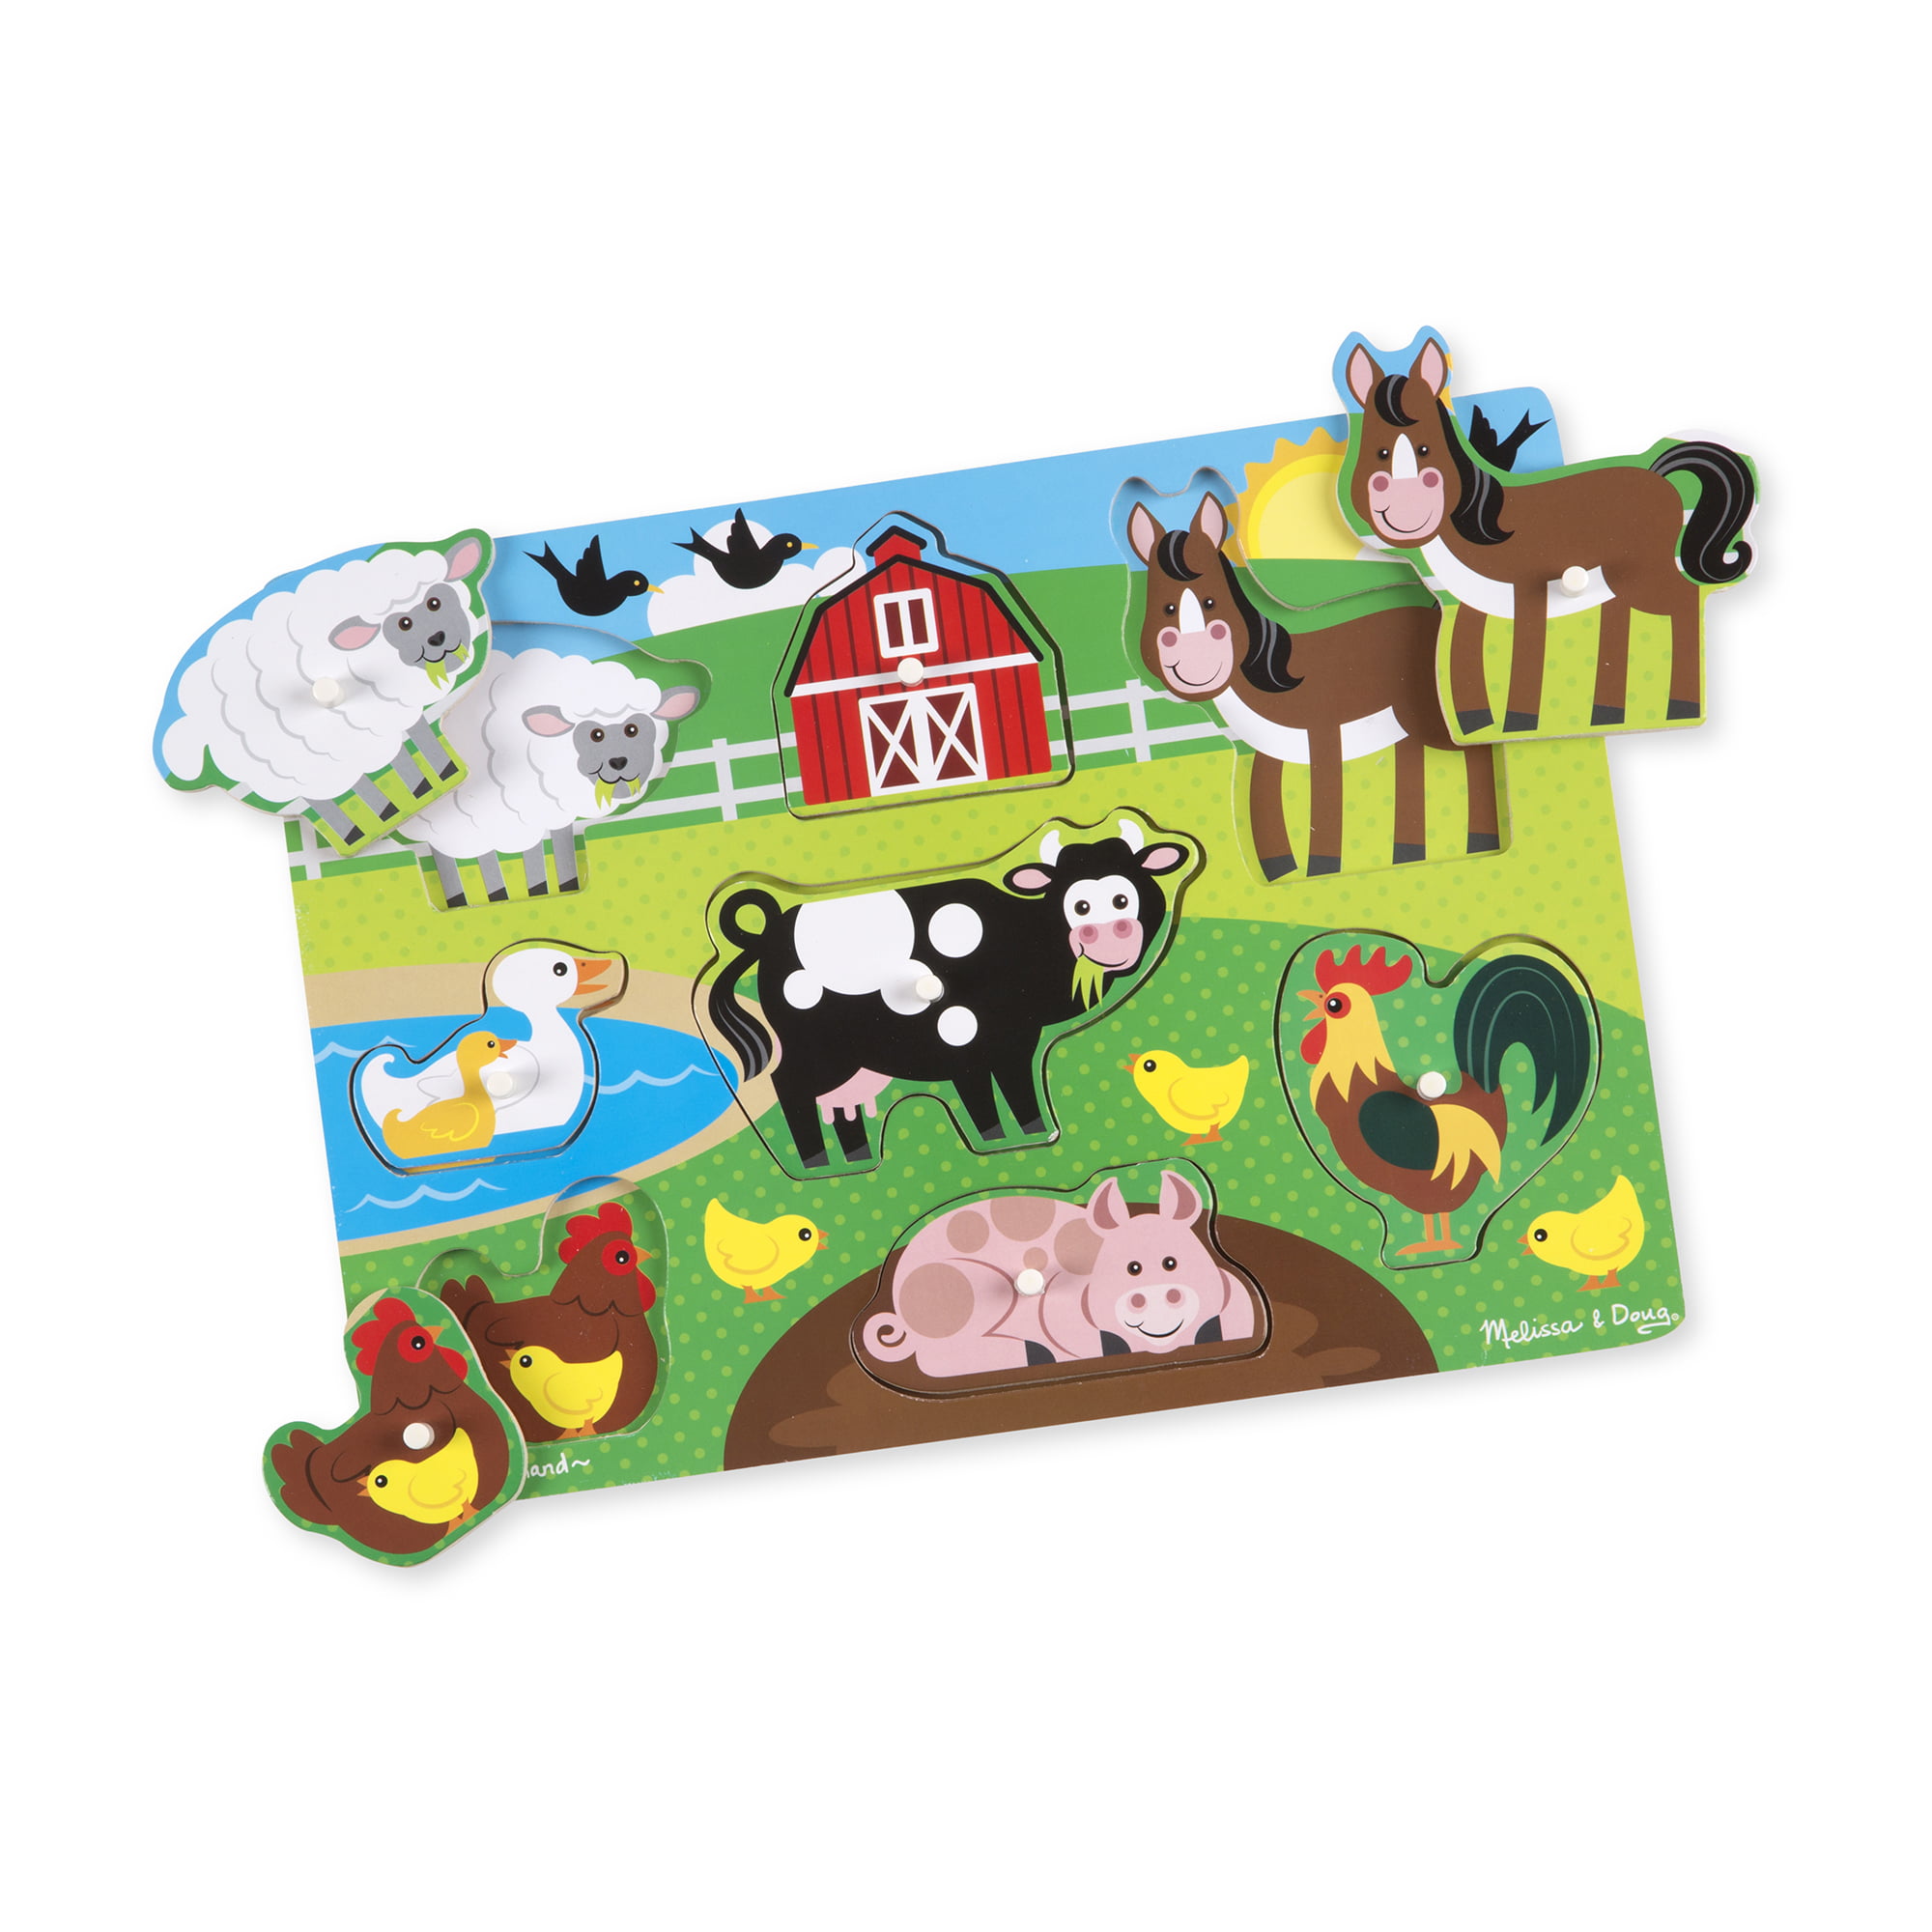 Melissa & Doug Farm Animal Peg Puzzle 8pcs for sale online 